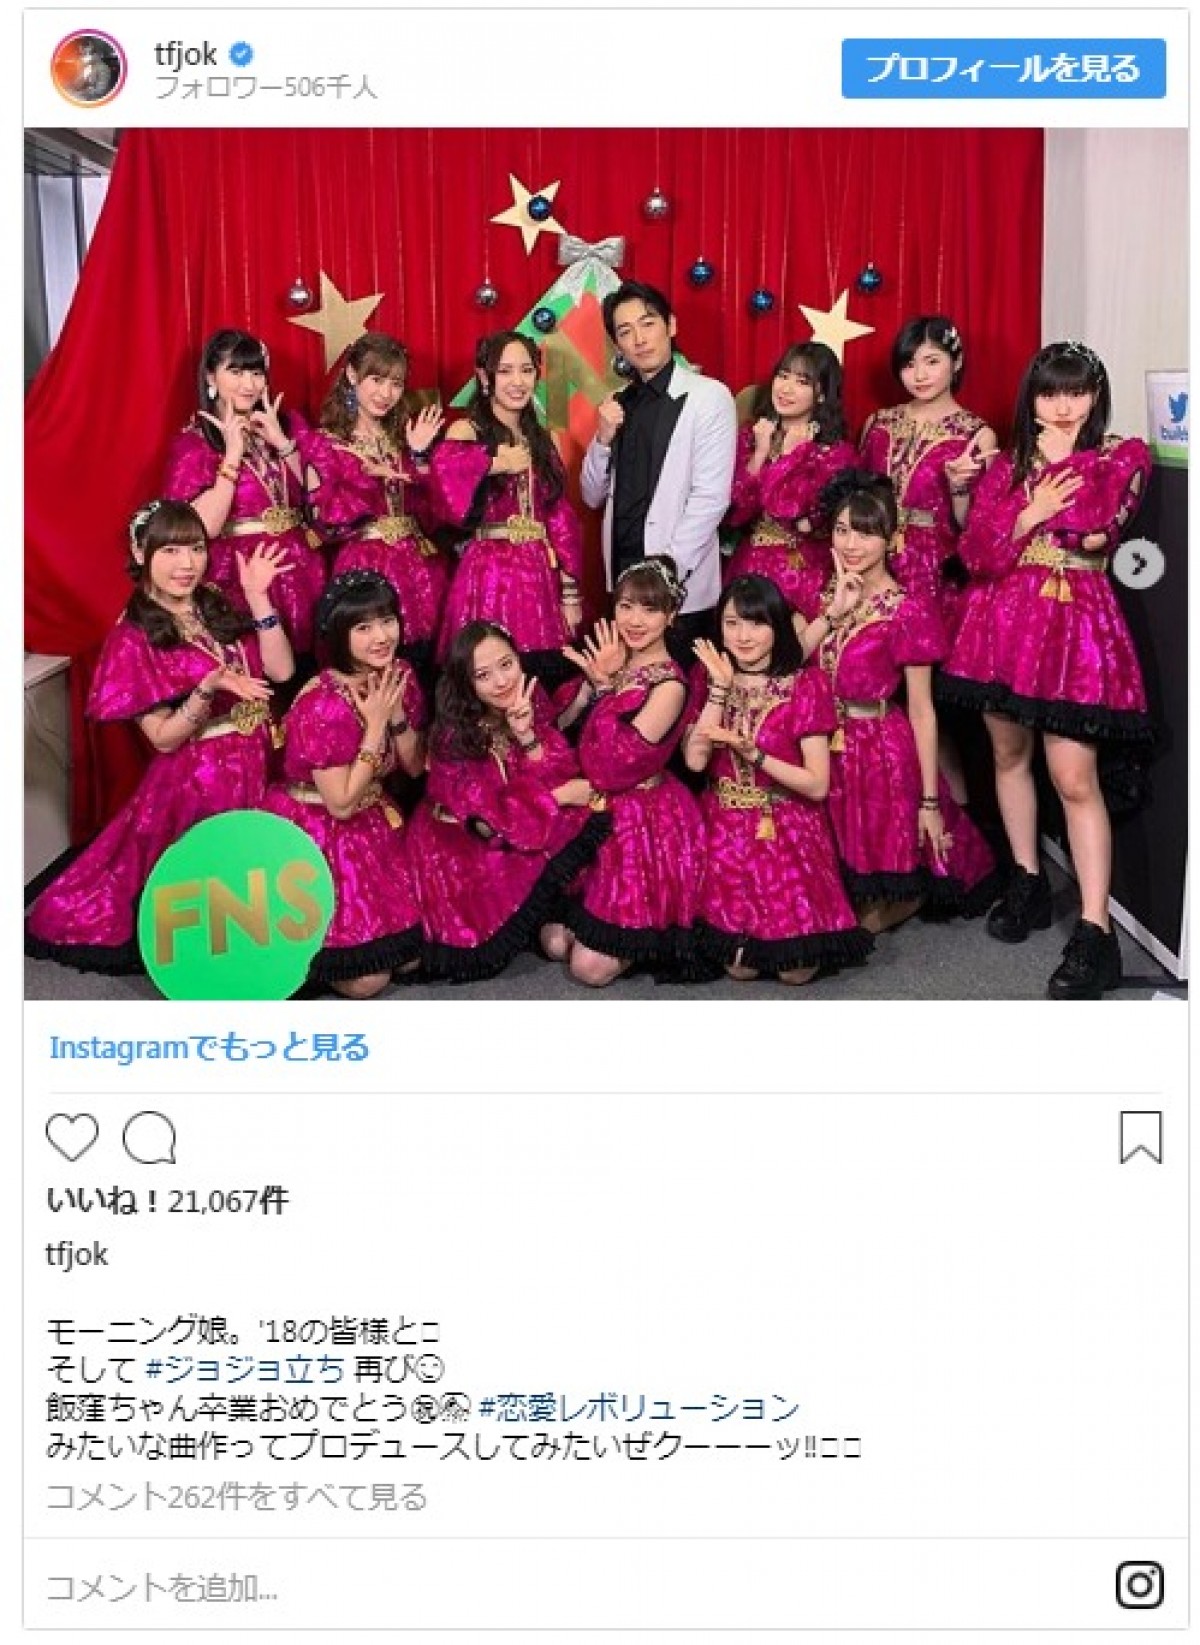 ディーン・フジオカ、城田優らとの豪華な『FNS歌謡祭』オフショット披露